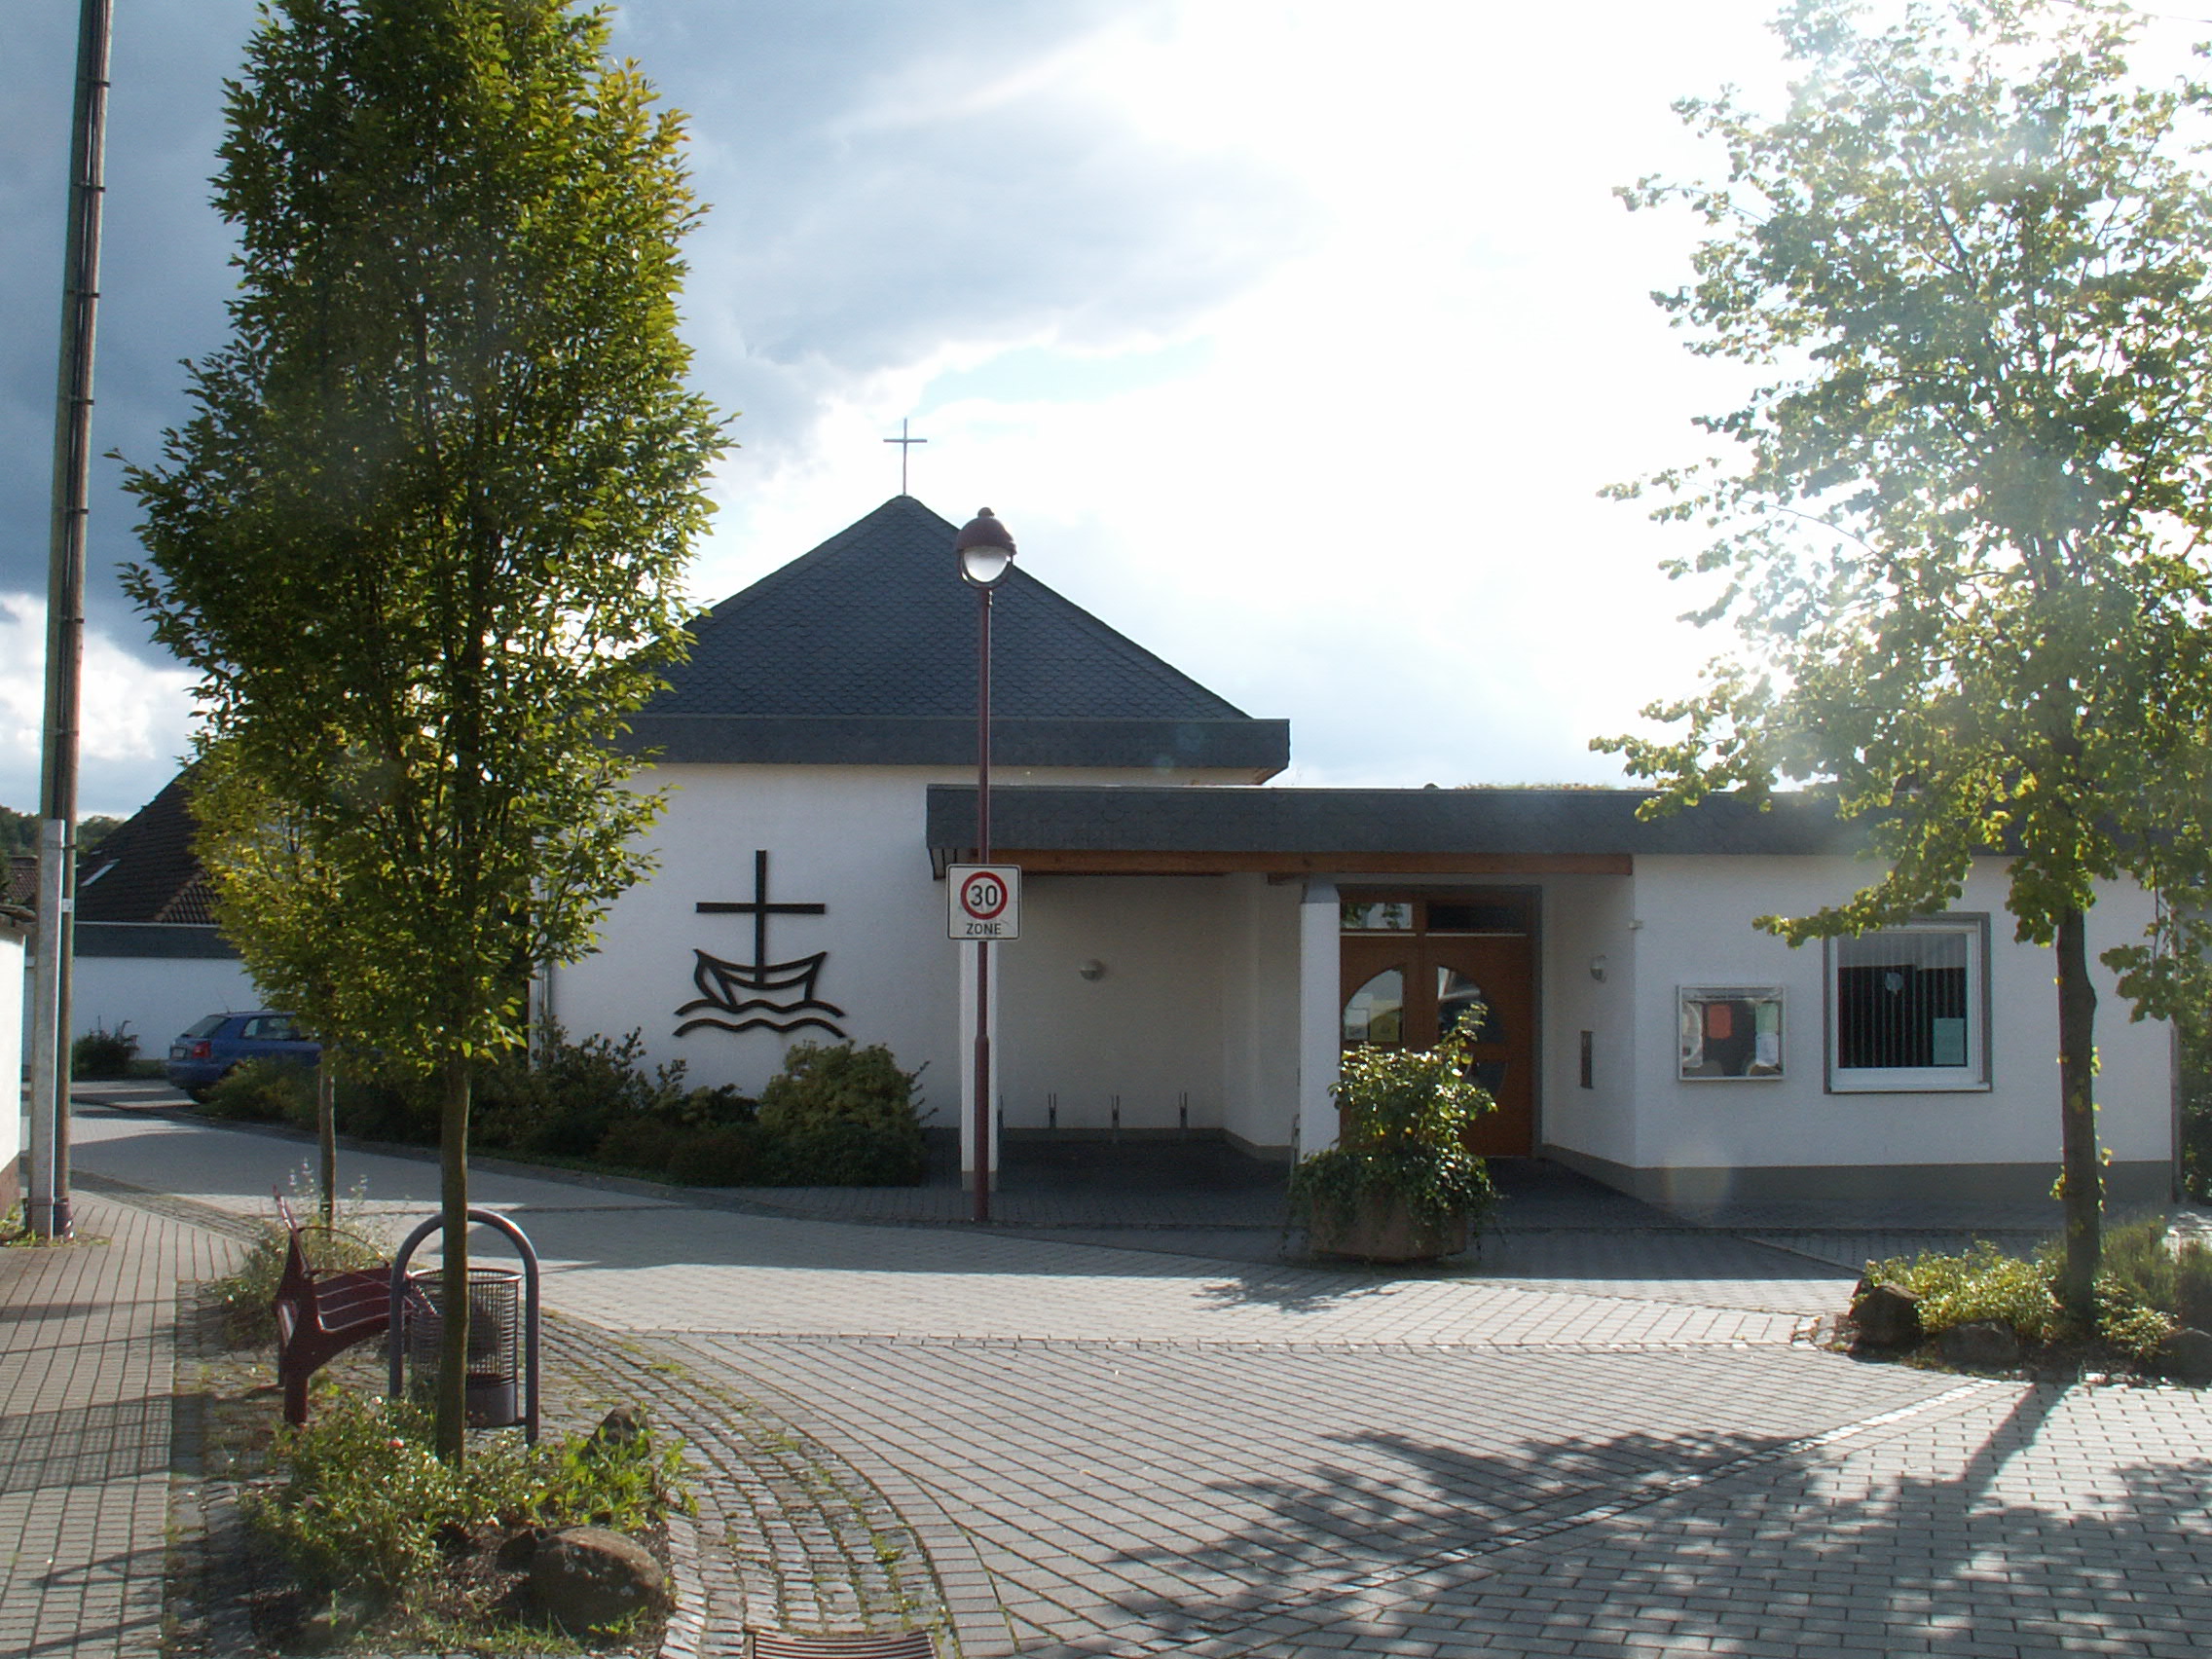 Arche Horhausen - Evangelische Kirchengemeinde Honnefeld, barrierefrei begehbar